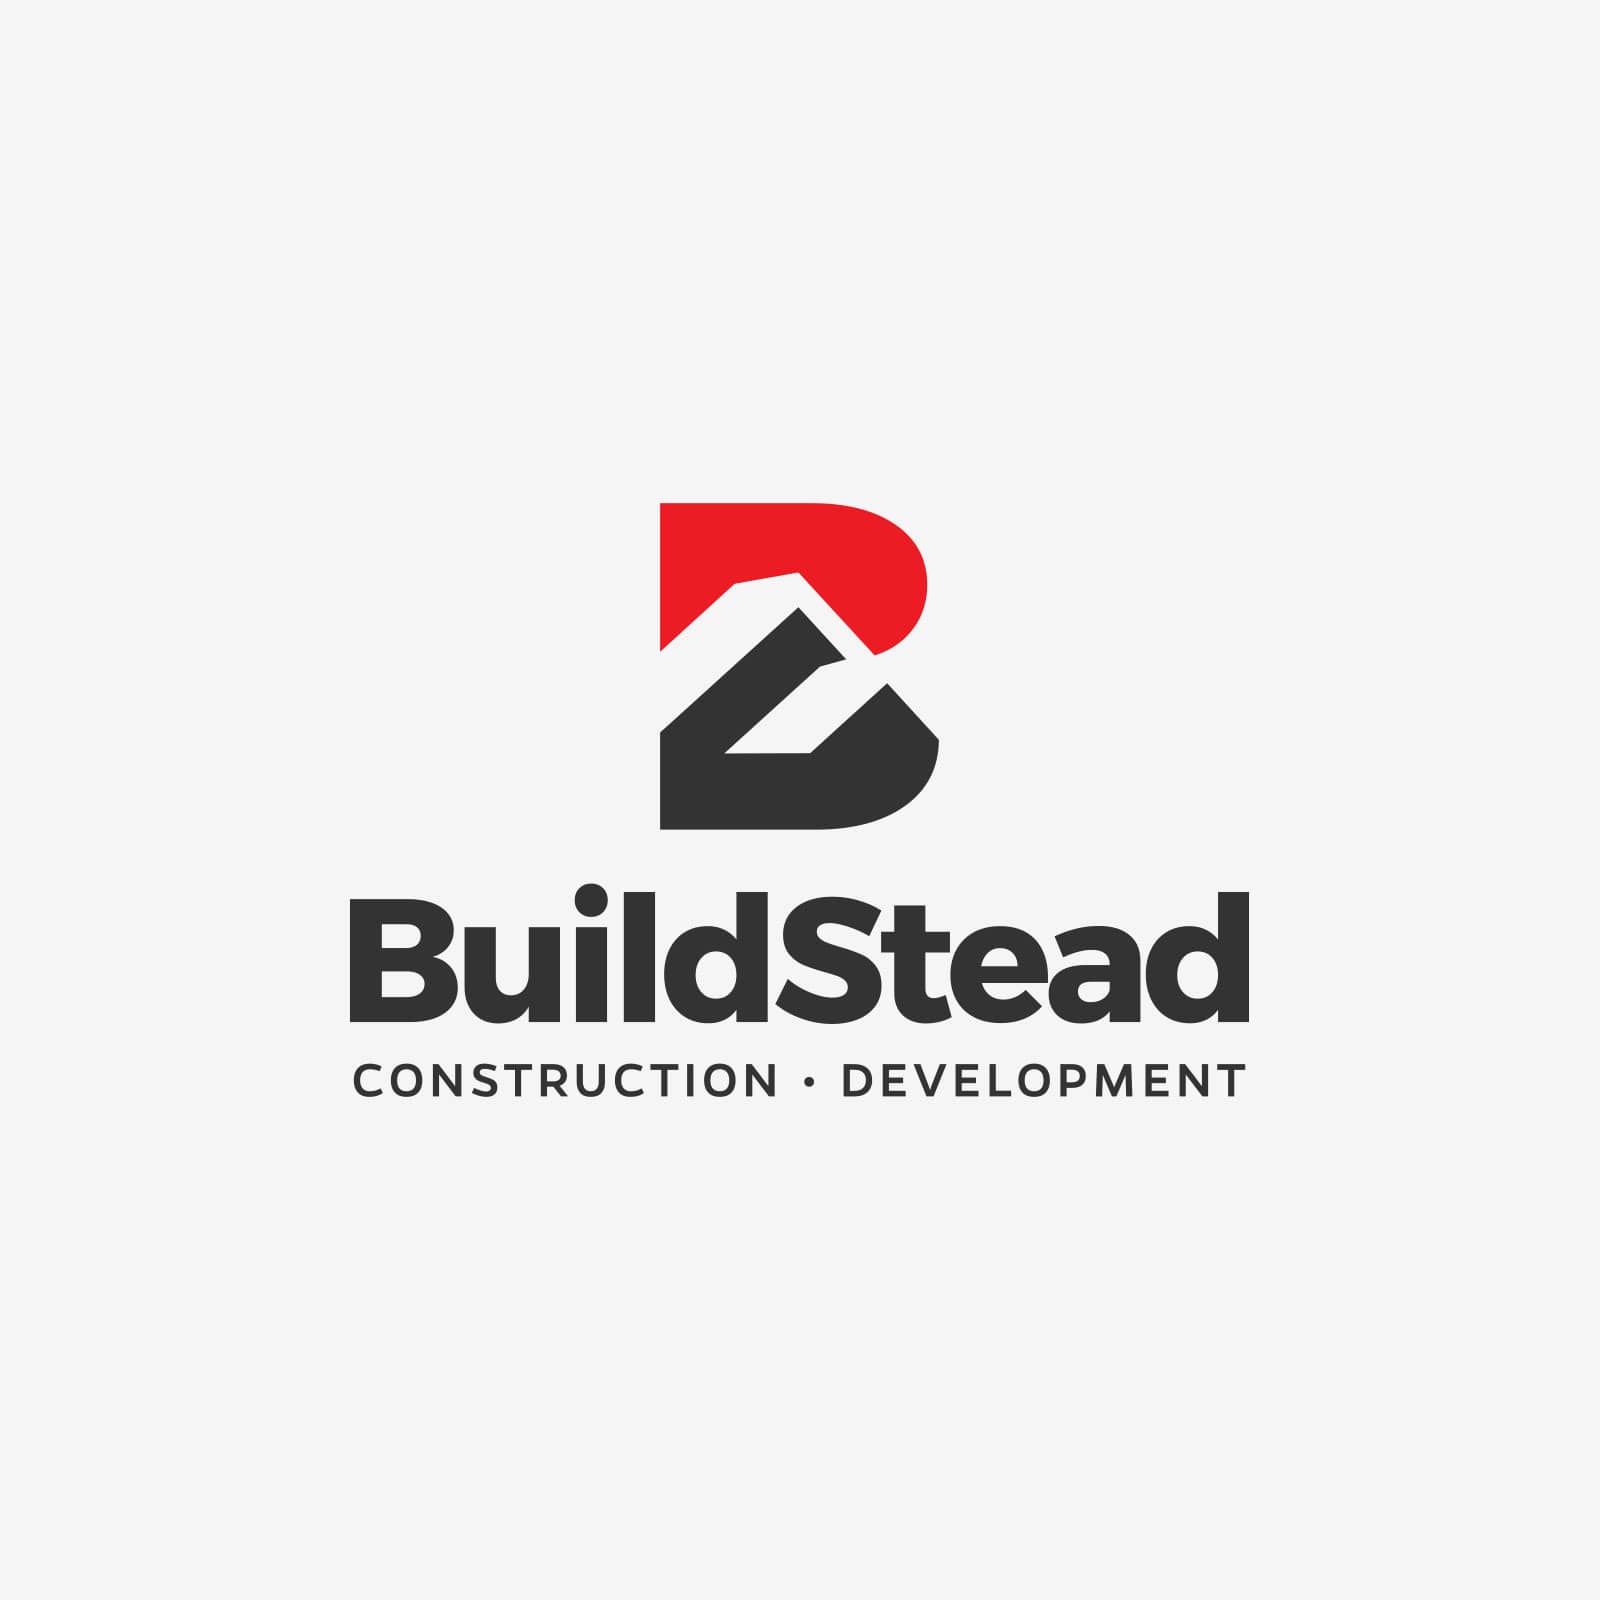 Logo design for BuildStead